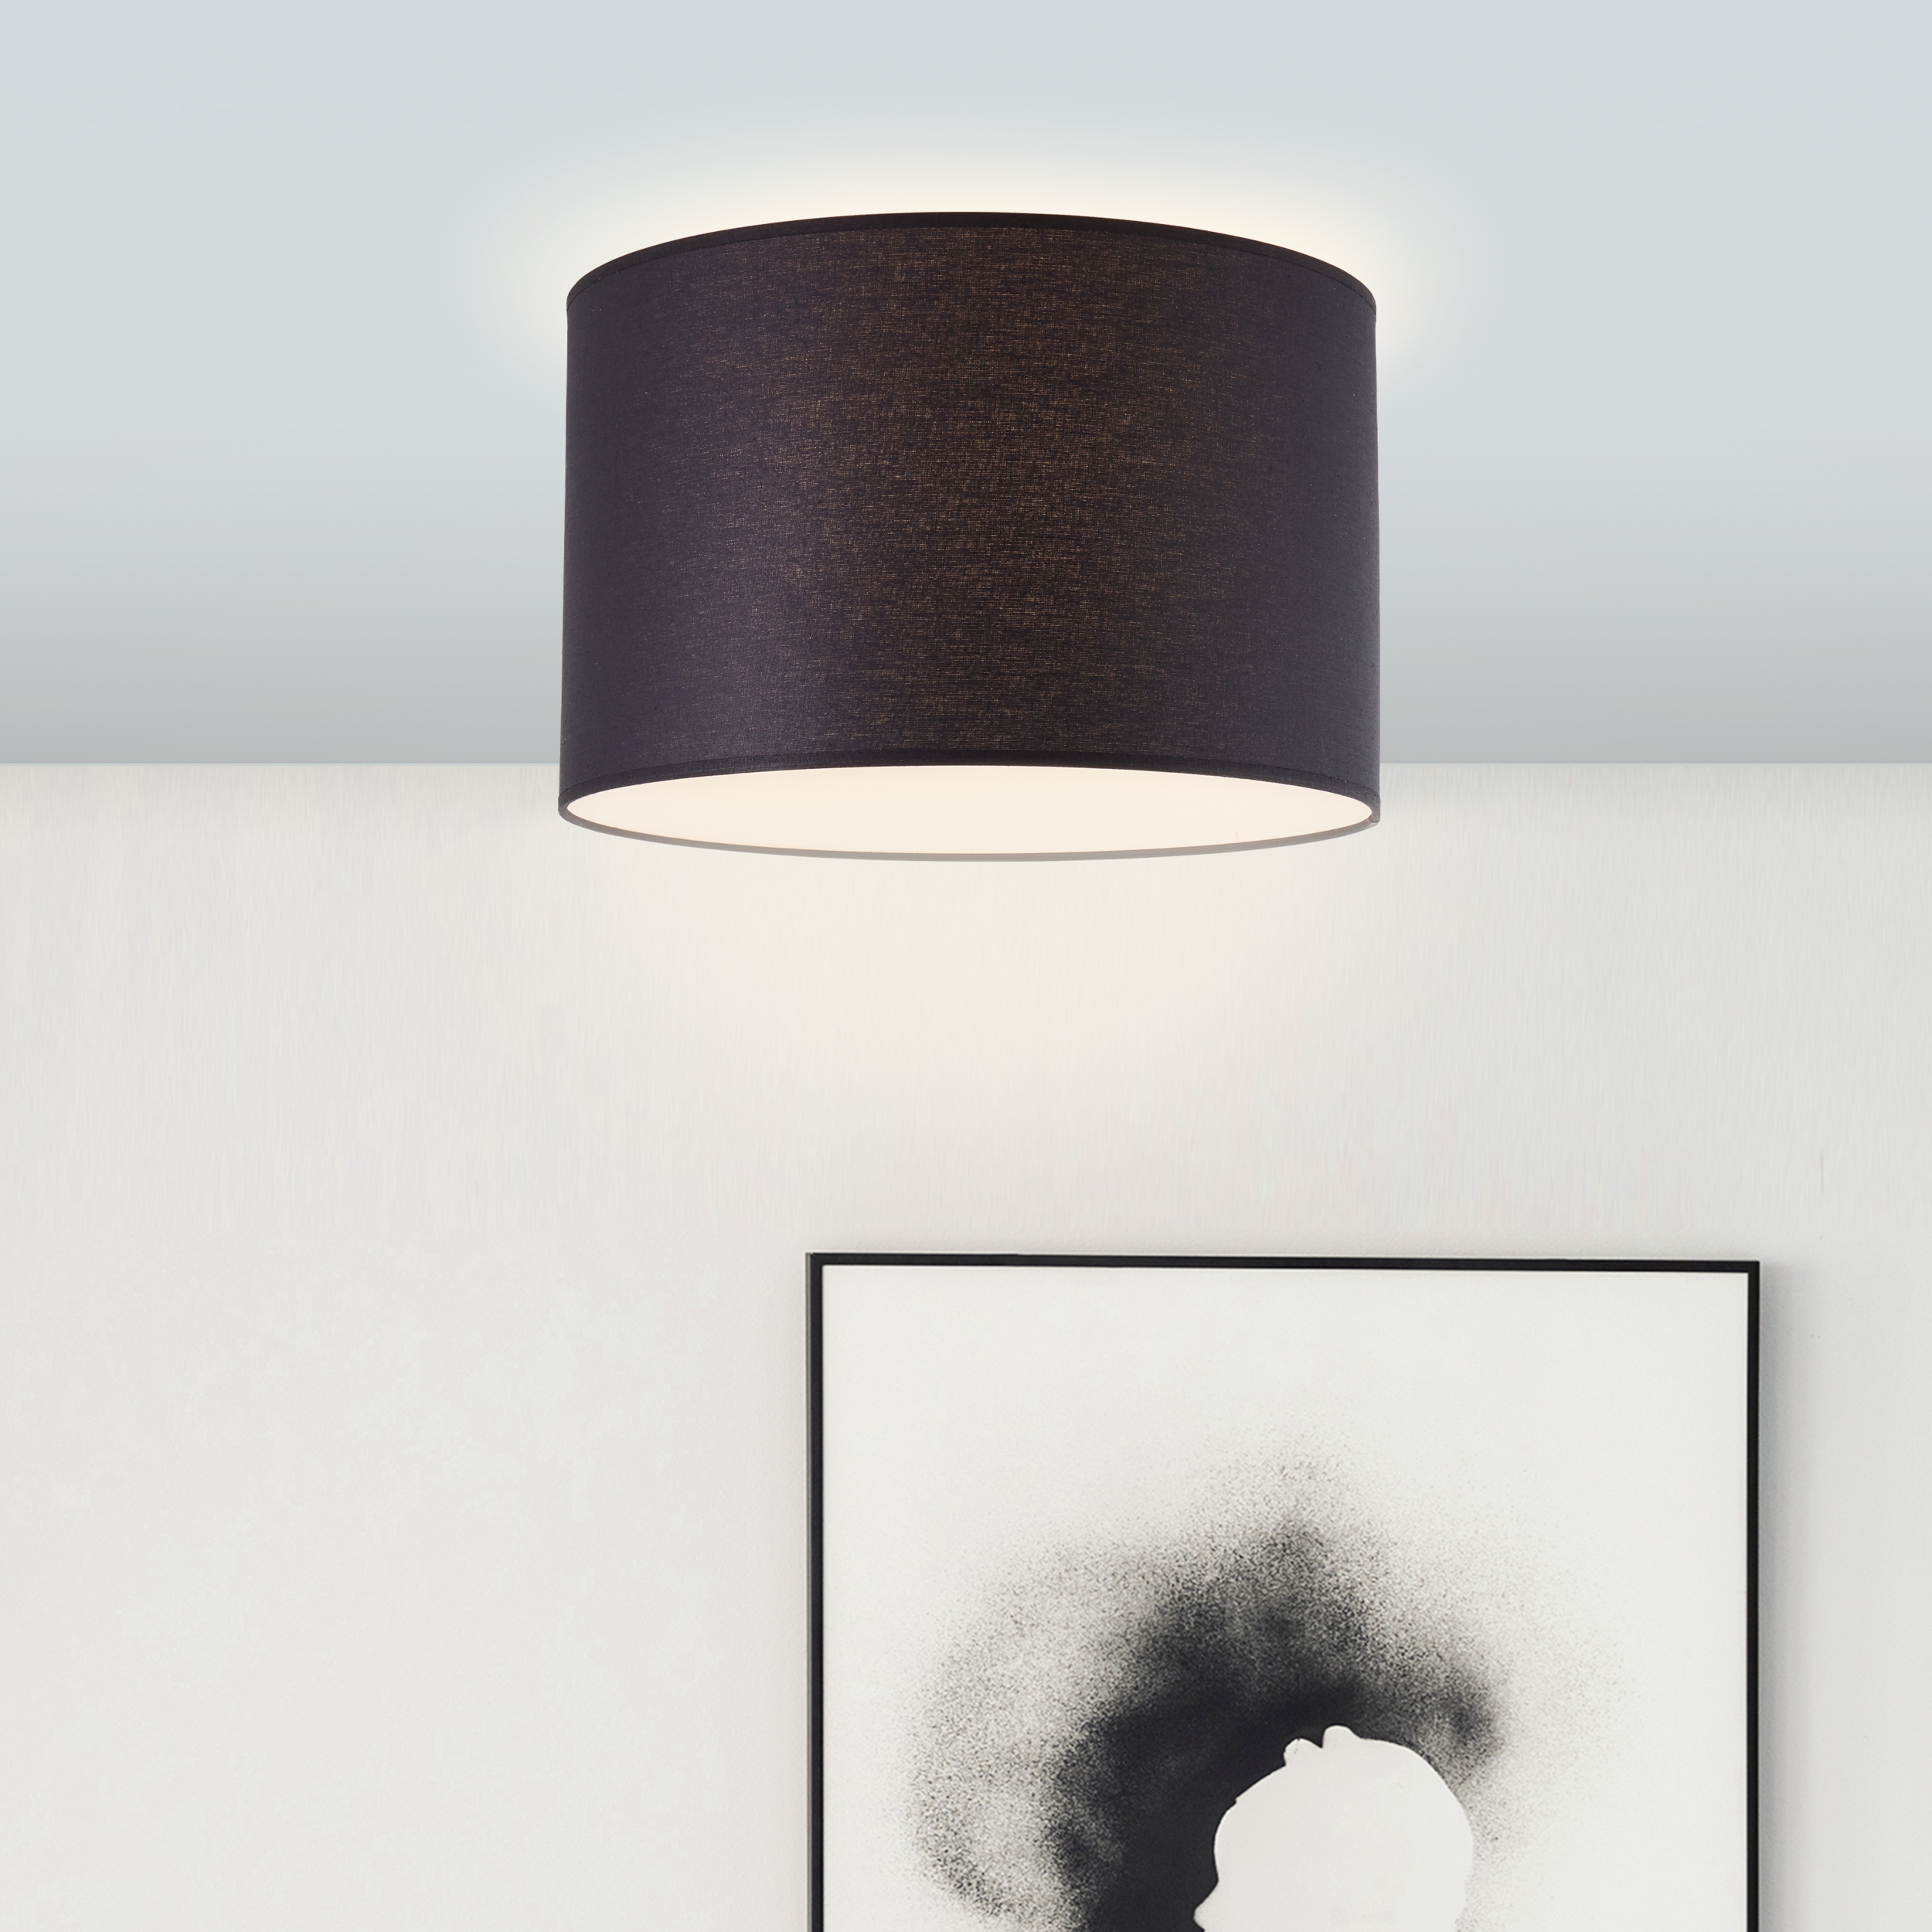 Deckenlampe mit Stoffschirm schwarz · Lightbox Leuchten & Licht GmbH